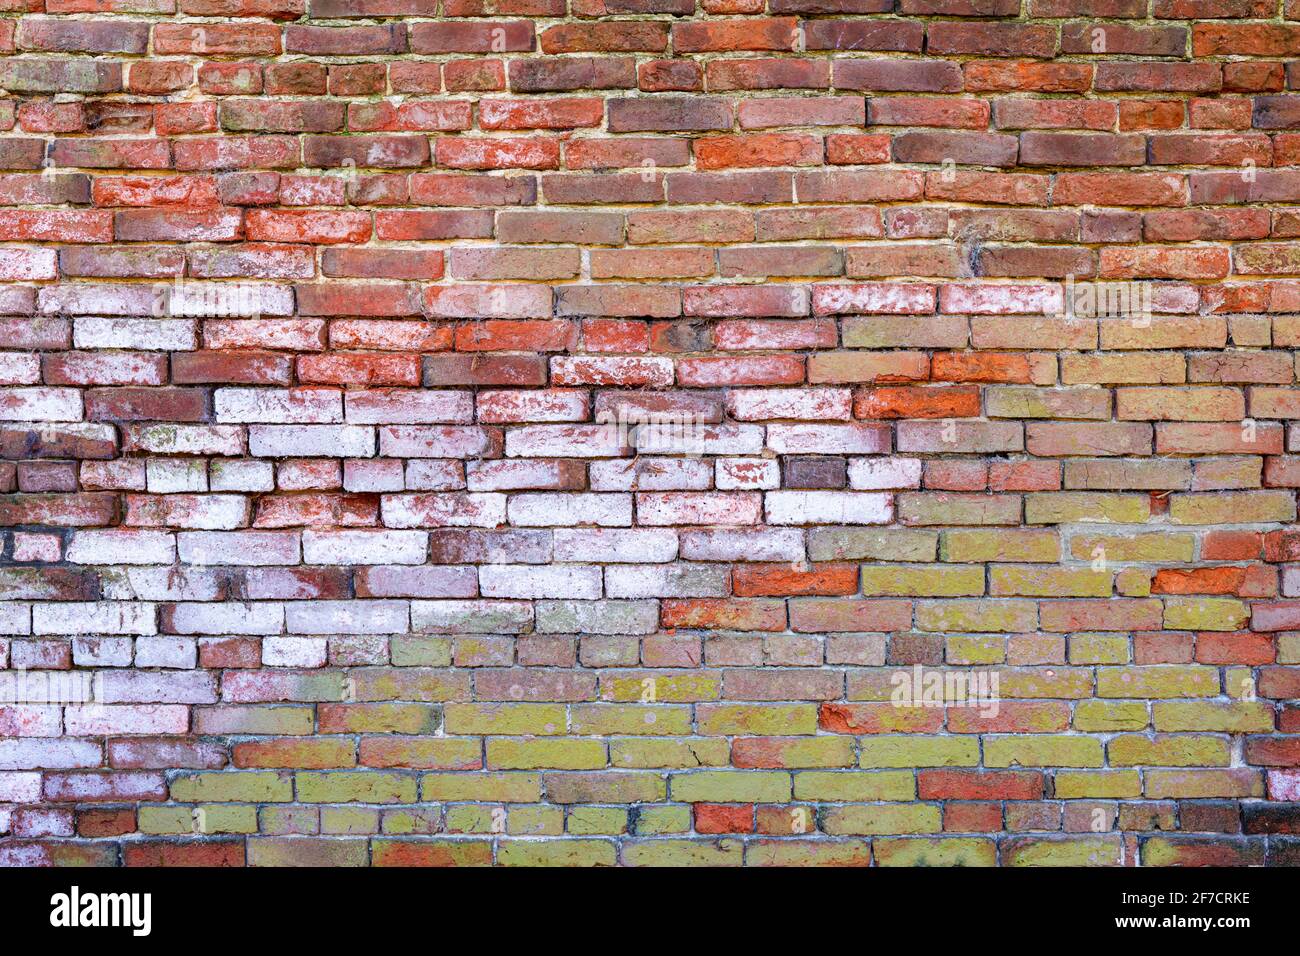 Mehrfarbige Backsteinwand Hintergrund Vielzahl von Ziegeln Backsteinwand gemacht Mit alten wiedergewonnenen Steinen Foto in hoher Auflösung und hoher Qualität Stockfoto